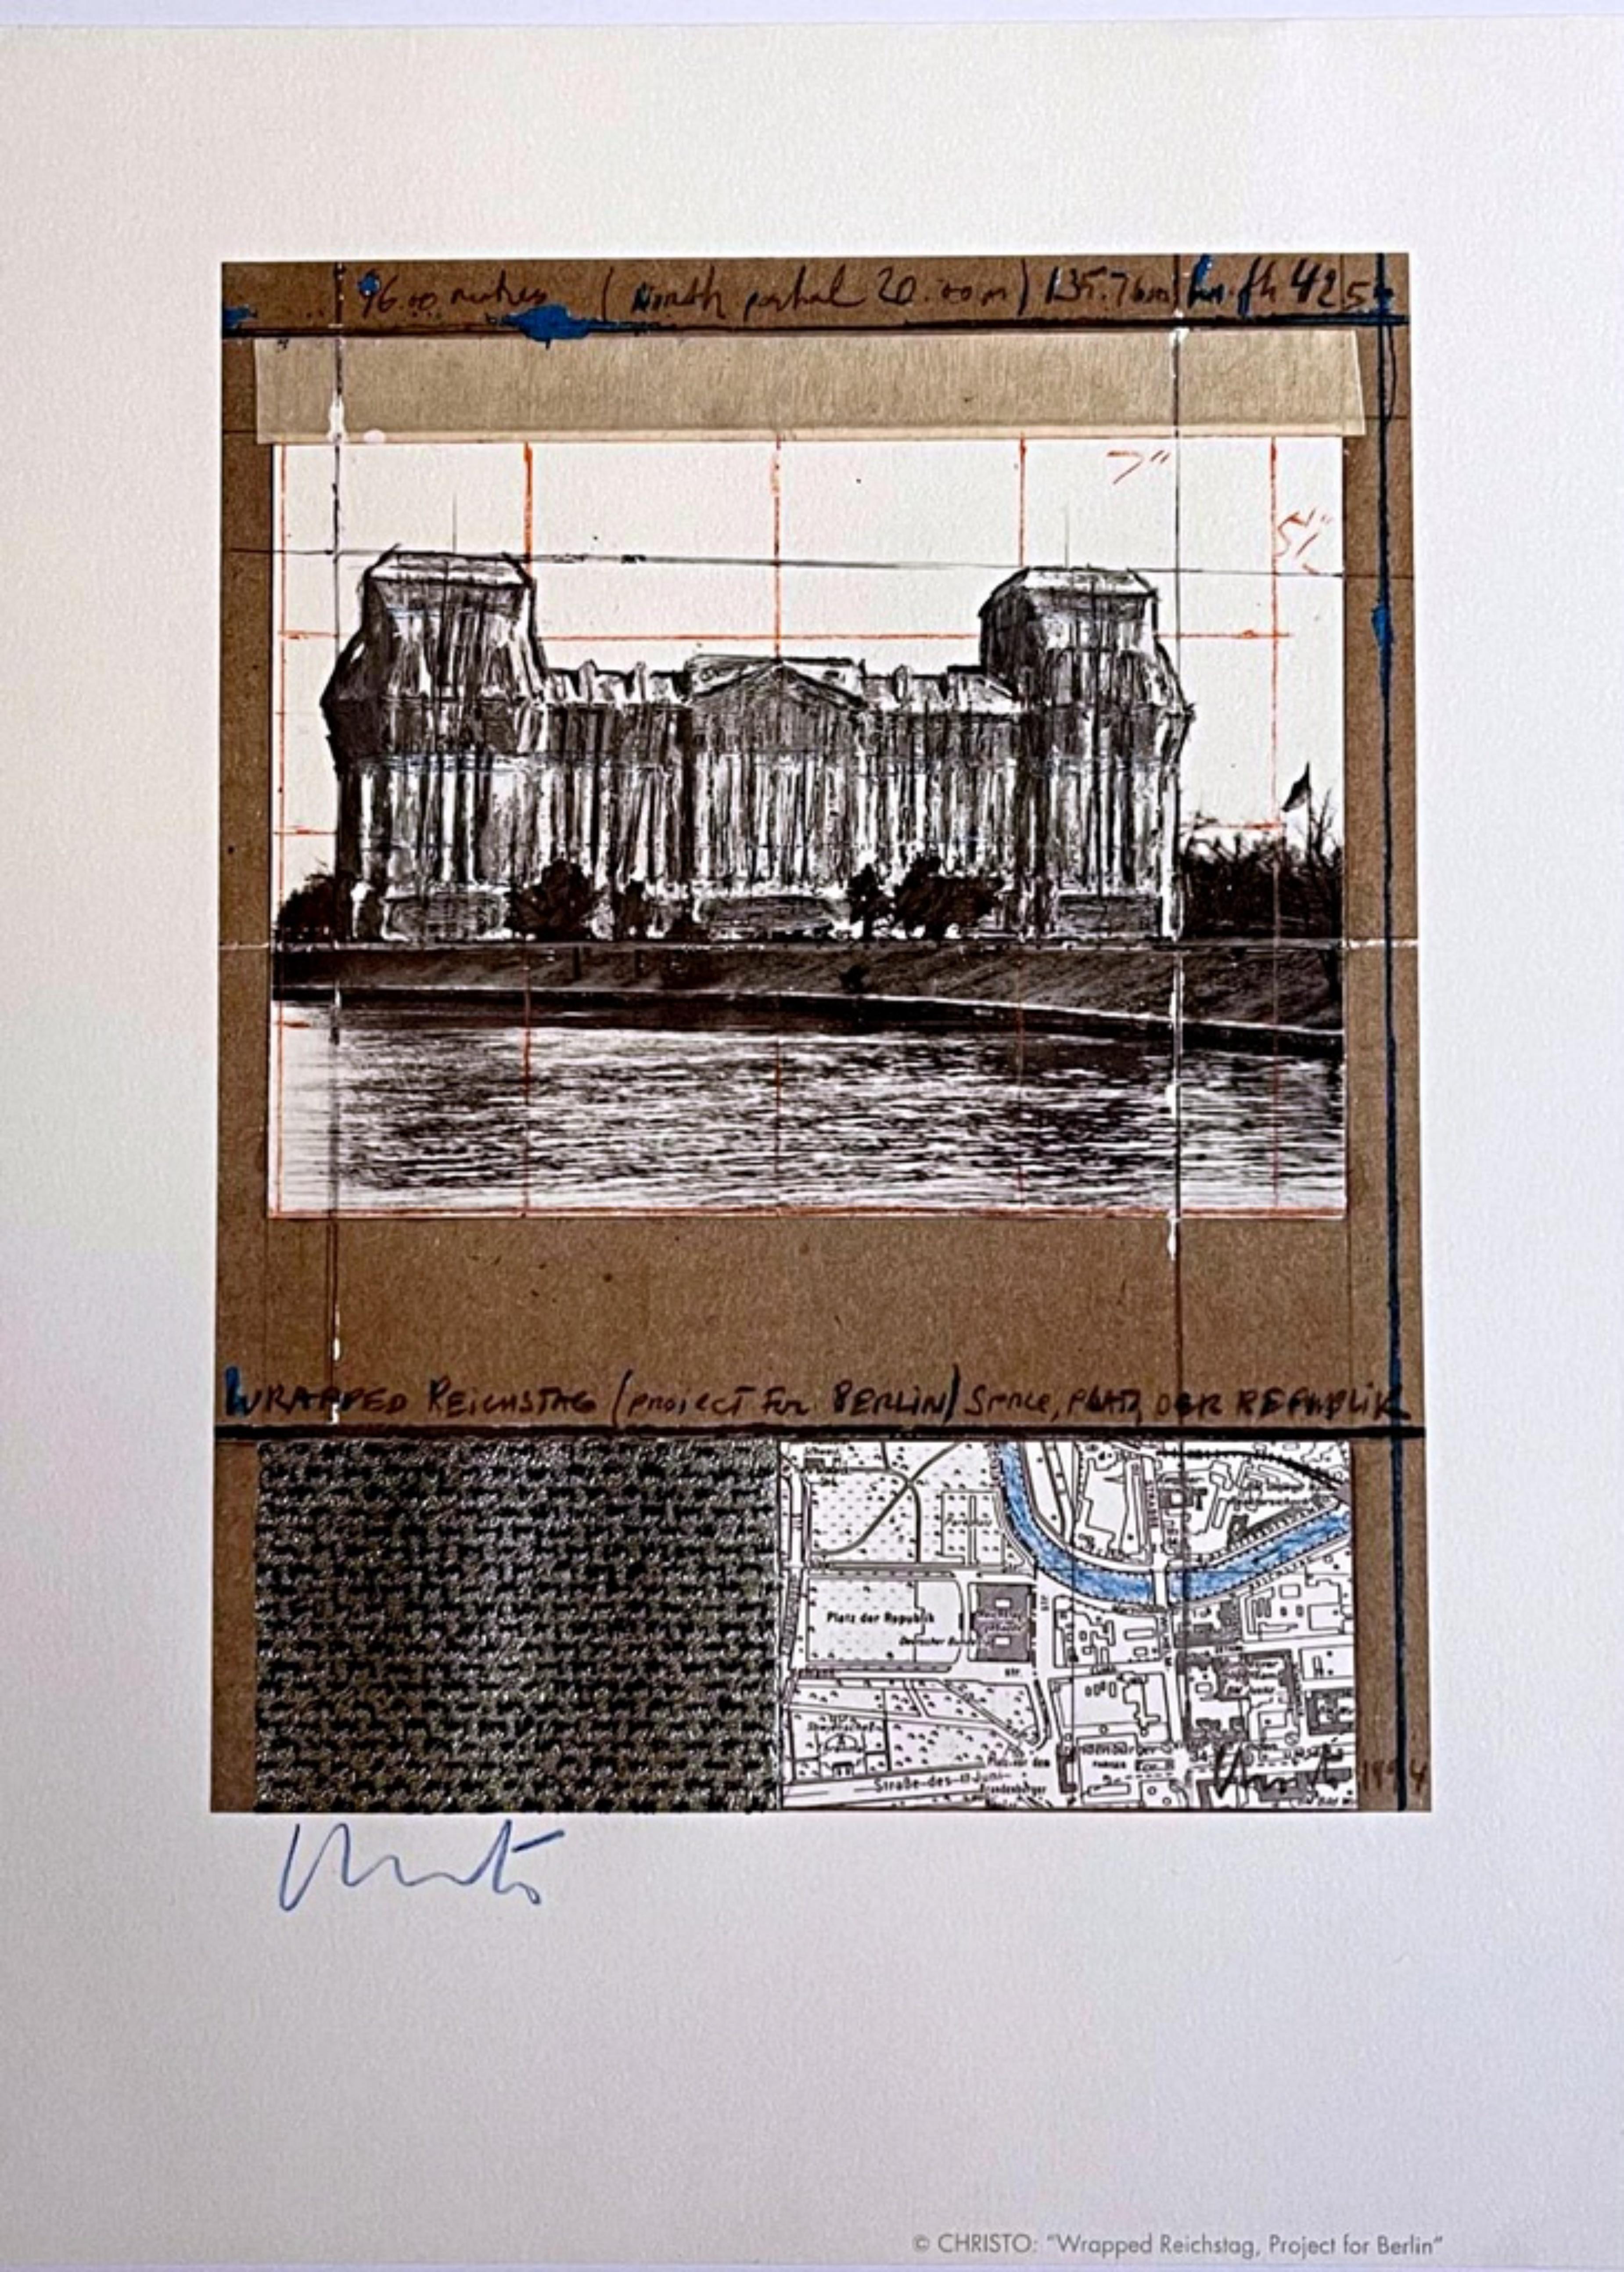 Reichstag, Berlin, collage avec papier argenté thermique en relief, signé à la main - Mixed Media Art de Christo